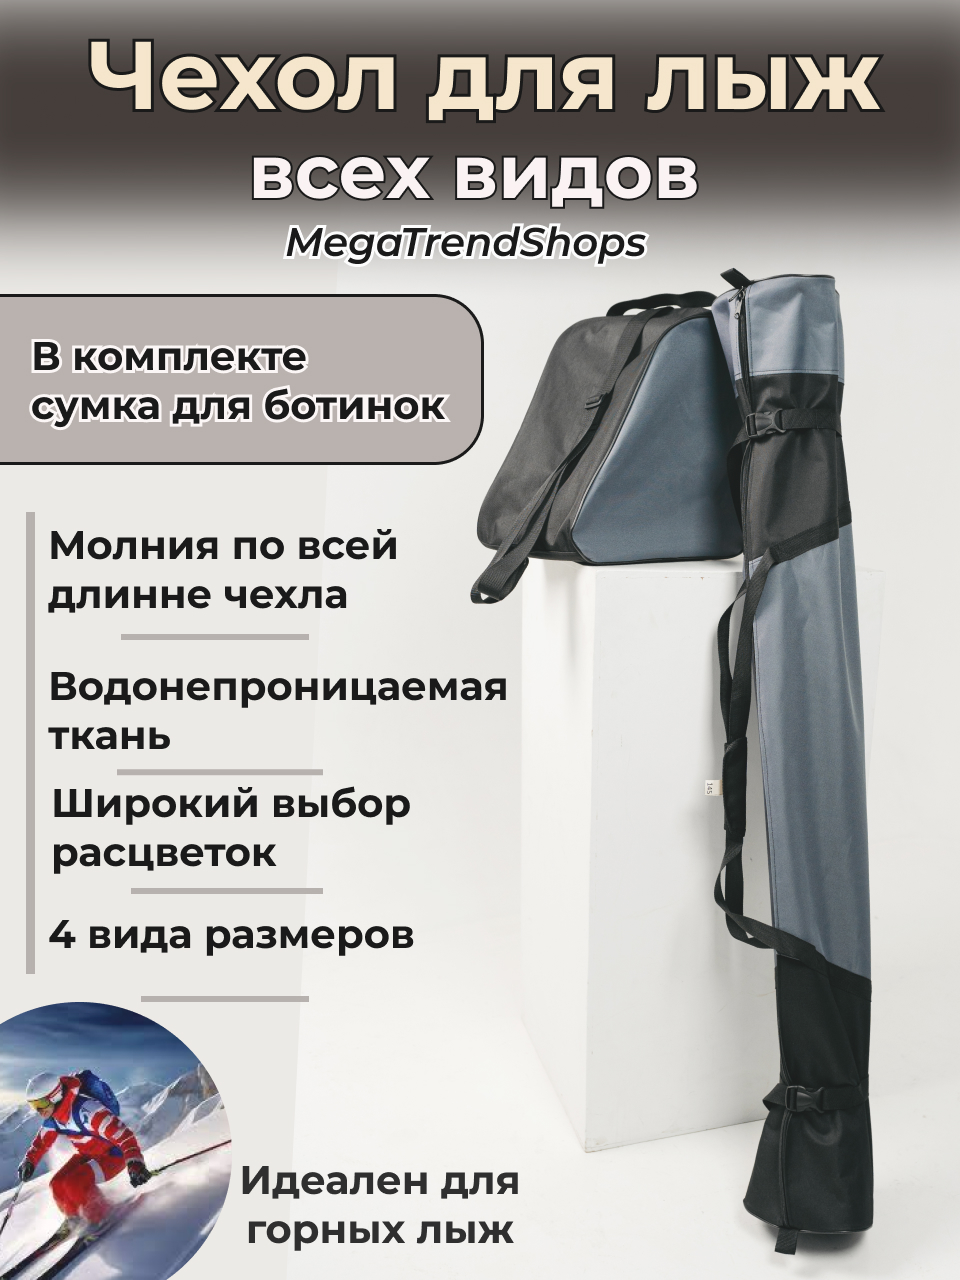 Чехол для лыж всех видов спортивный с сумкой для ботинок MegaTrendShops серый 165 см